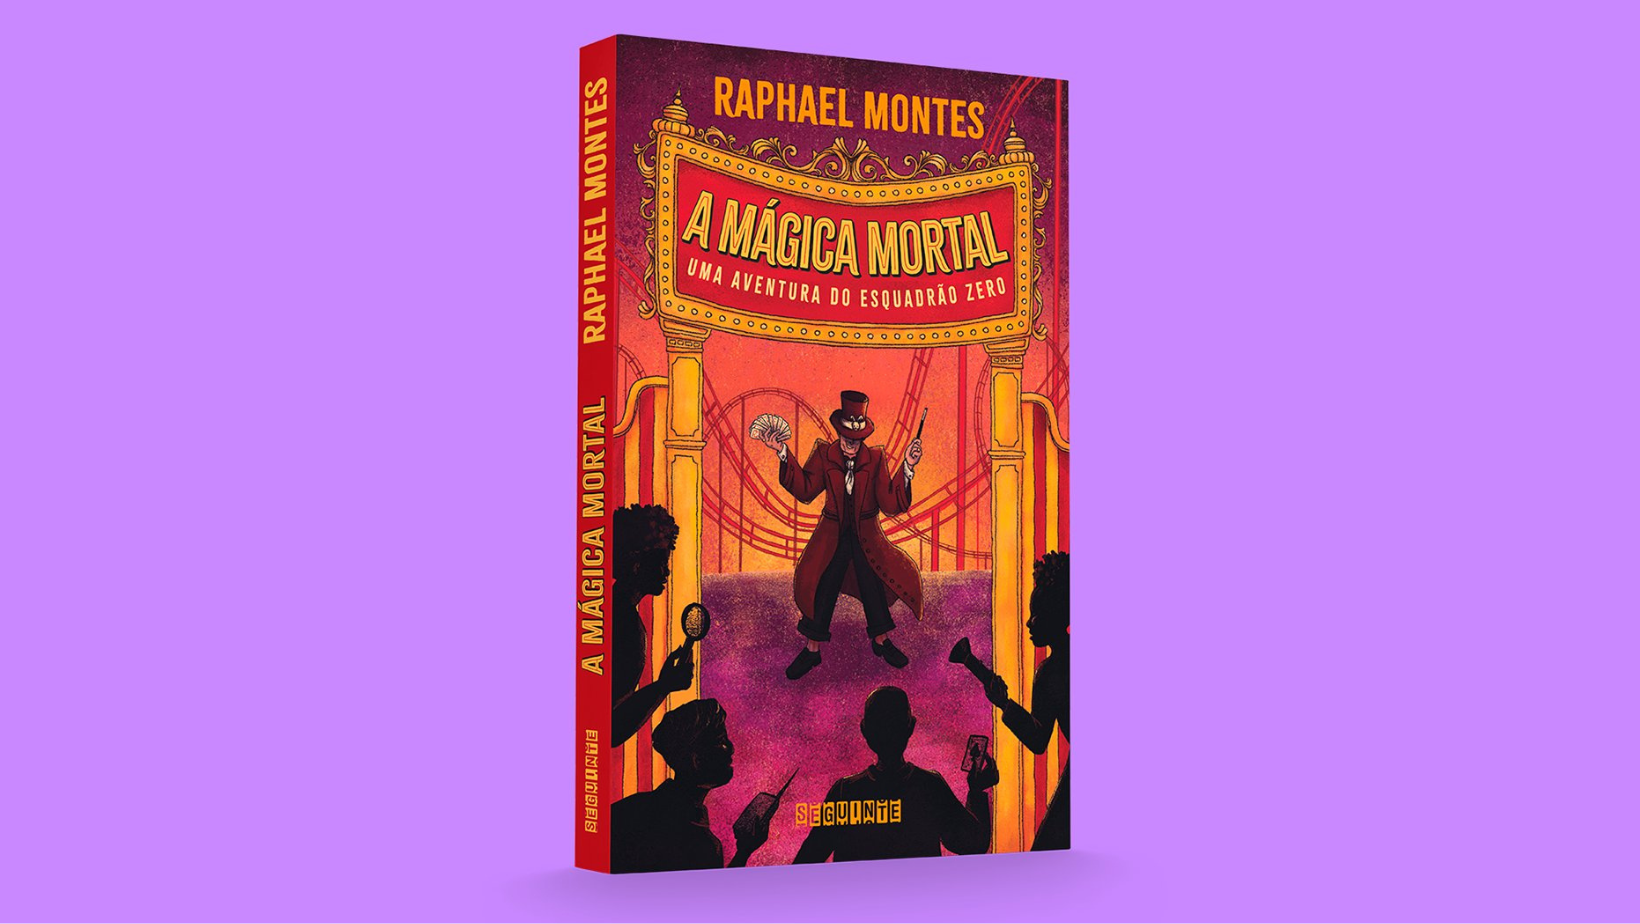 O mestre do suspense Raphael Montes chega nas livrarias, em julho, com seu primeiro livro juvenil, “A mágica mortal”.